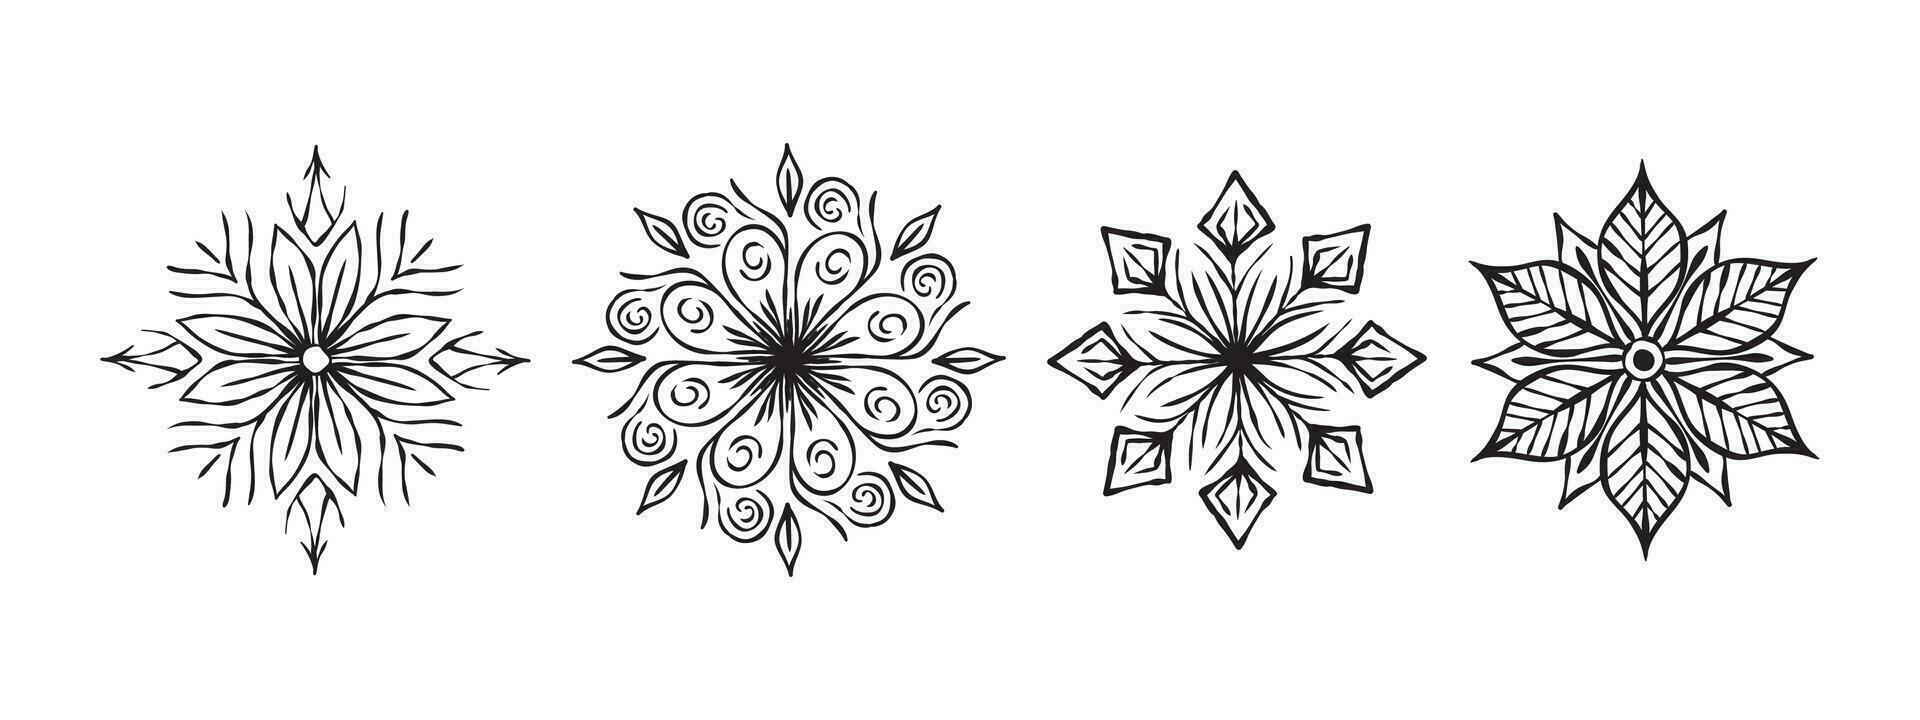 copos de nieve iconos mano dibujado copos de nieve. copo de nieve bosquejo. vector escalable gráficos